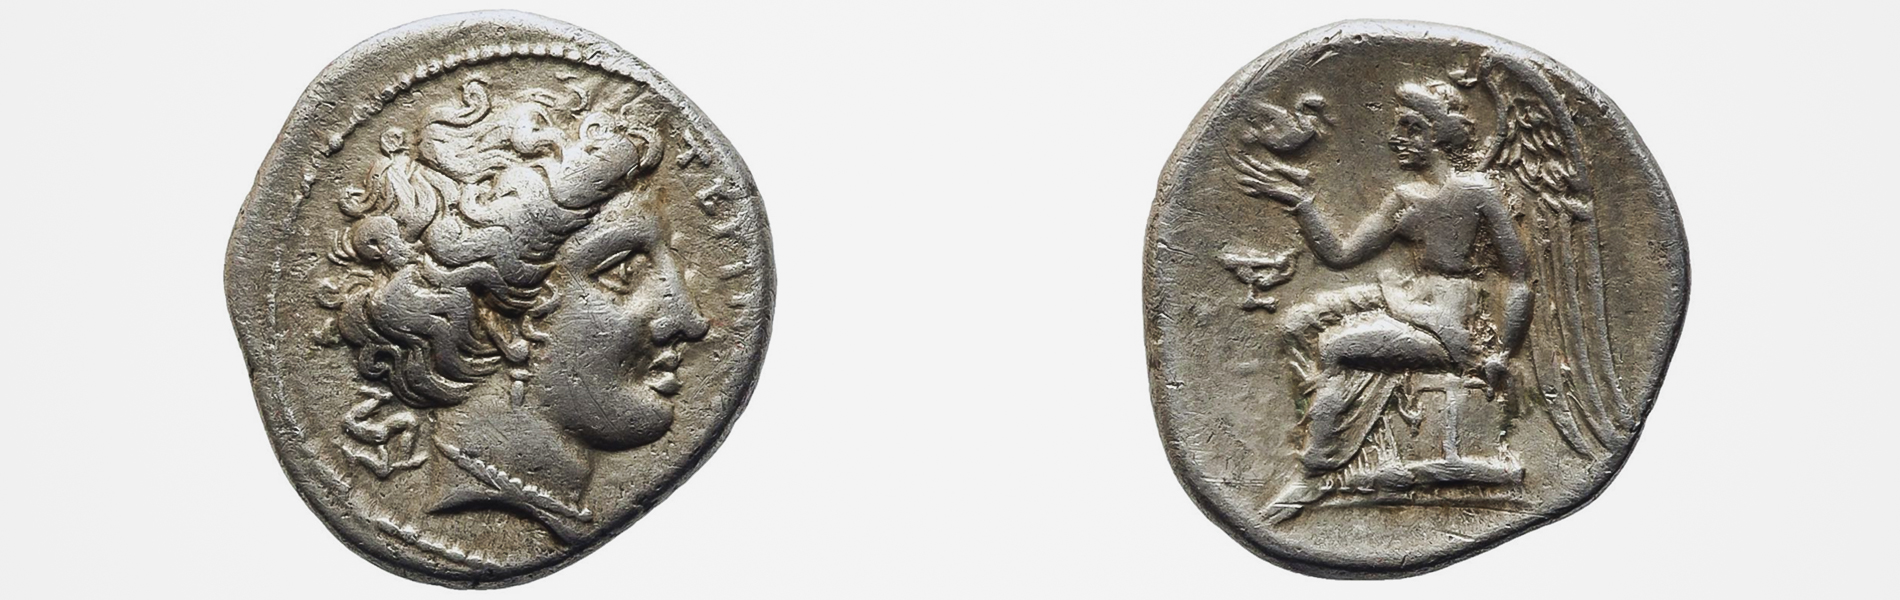 MINI A. - Monete antiche di bronzo della zecca di  - Bertolami Fine Art